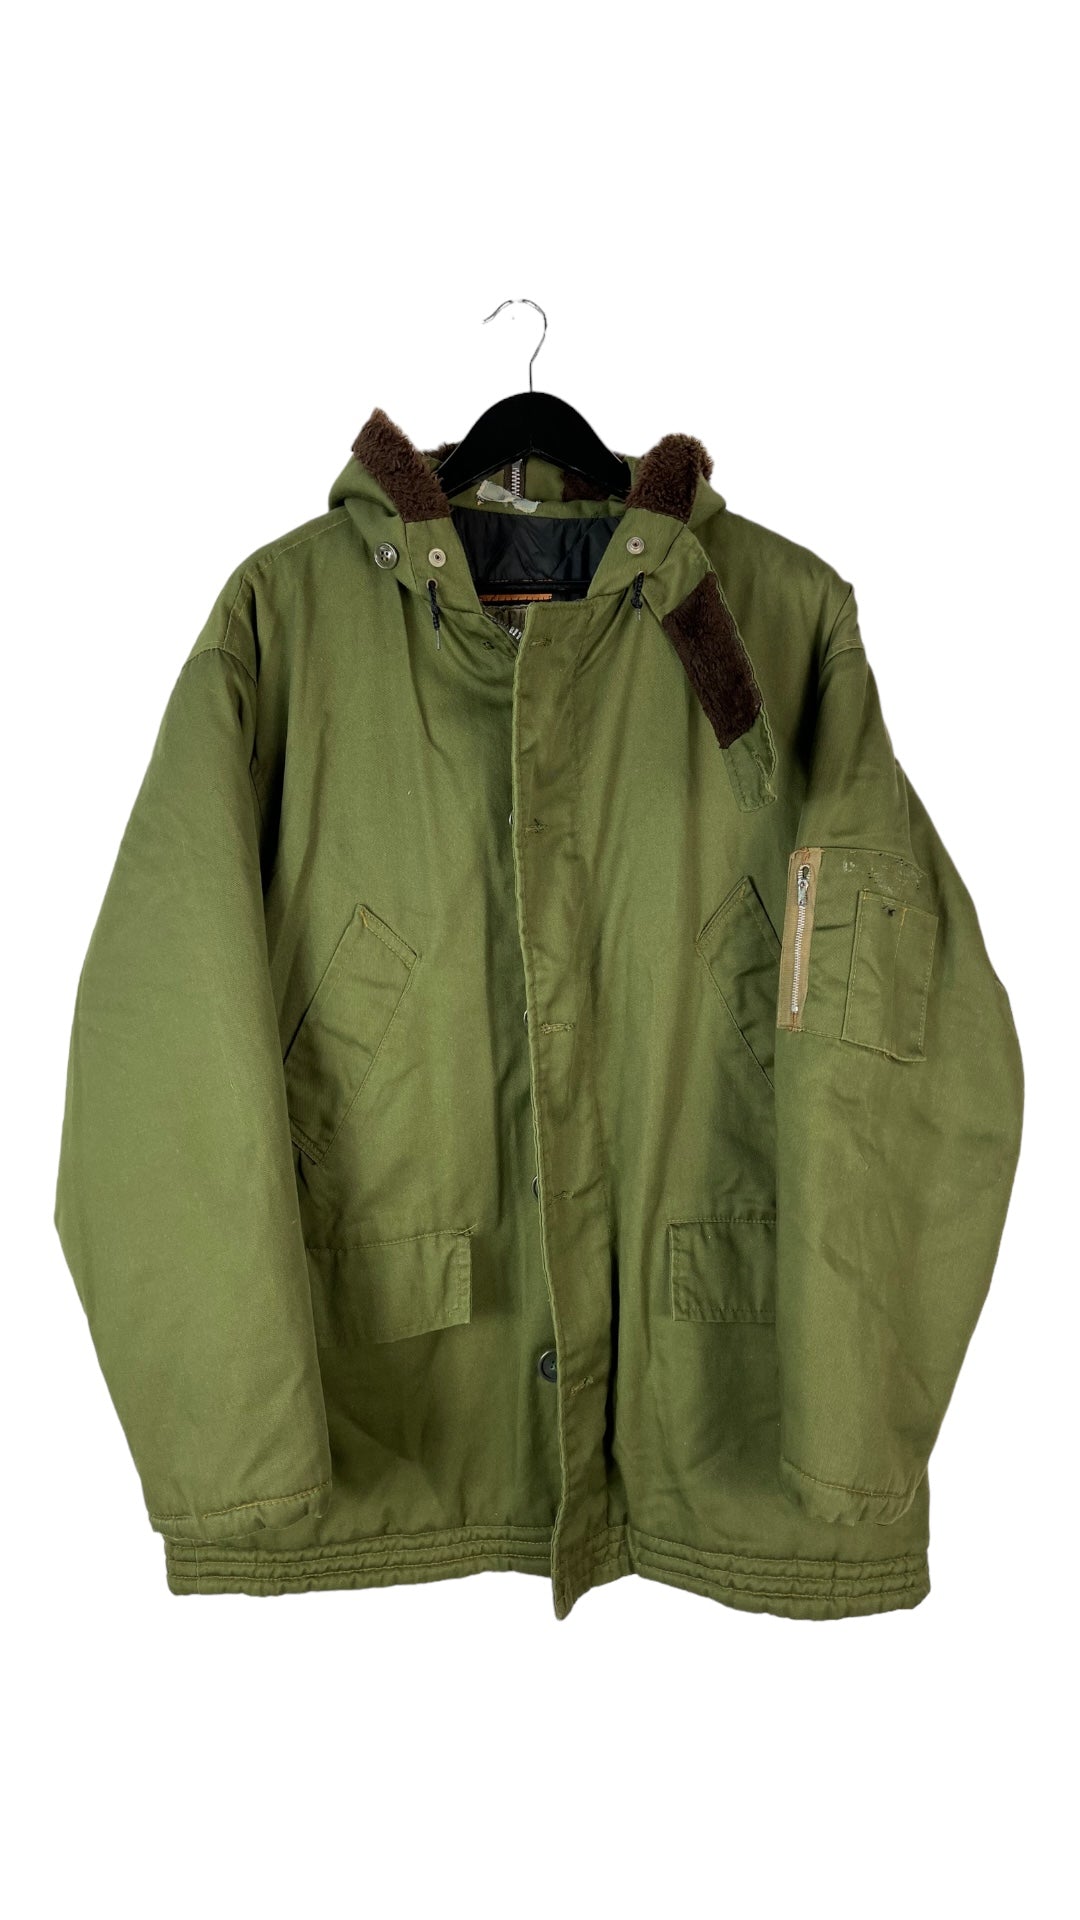 VTG Military Olive Zip Up Parka Jacket Sz XL